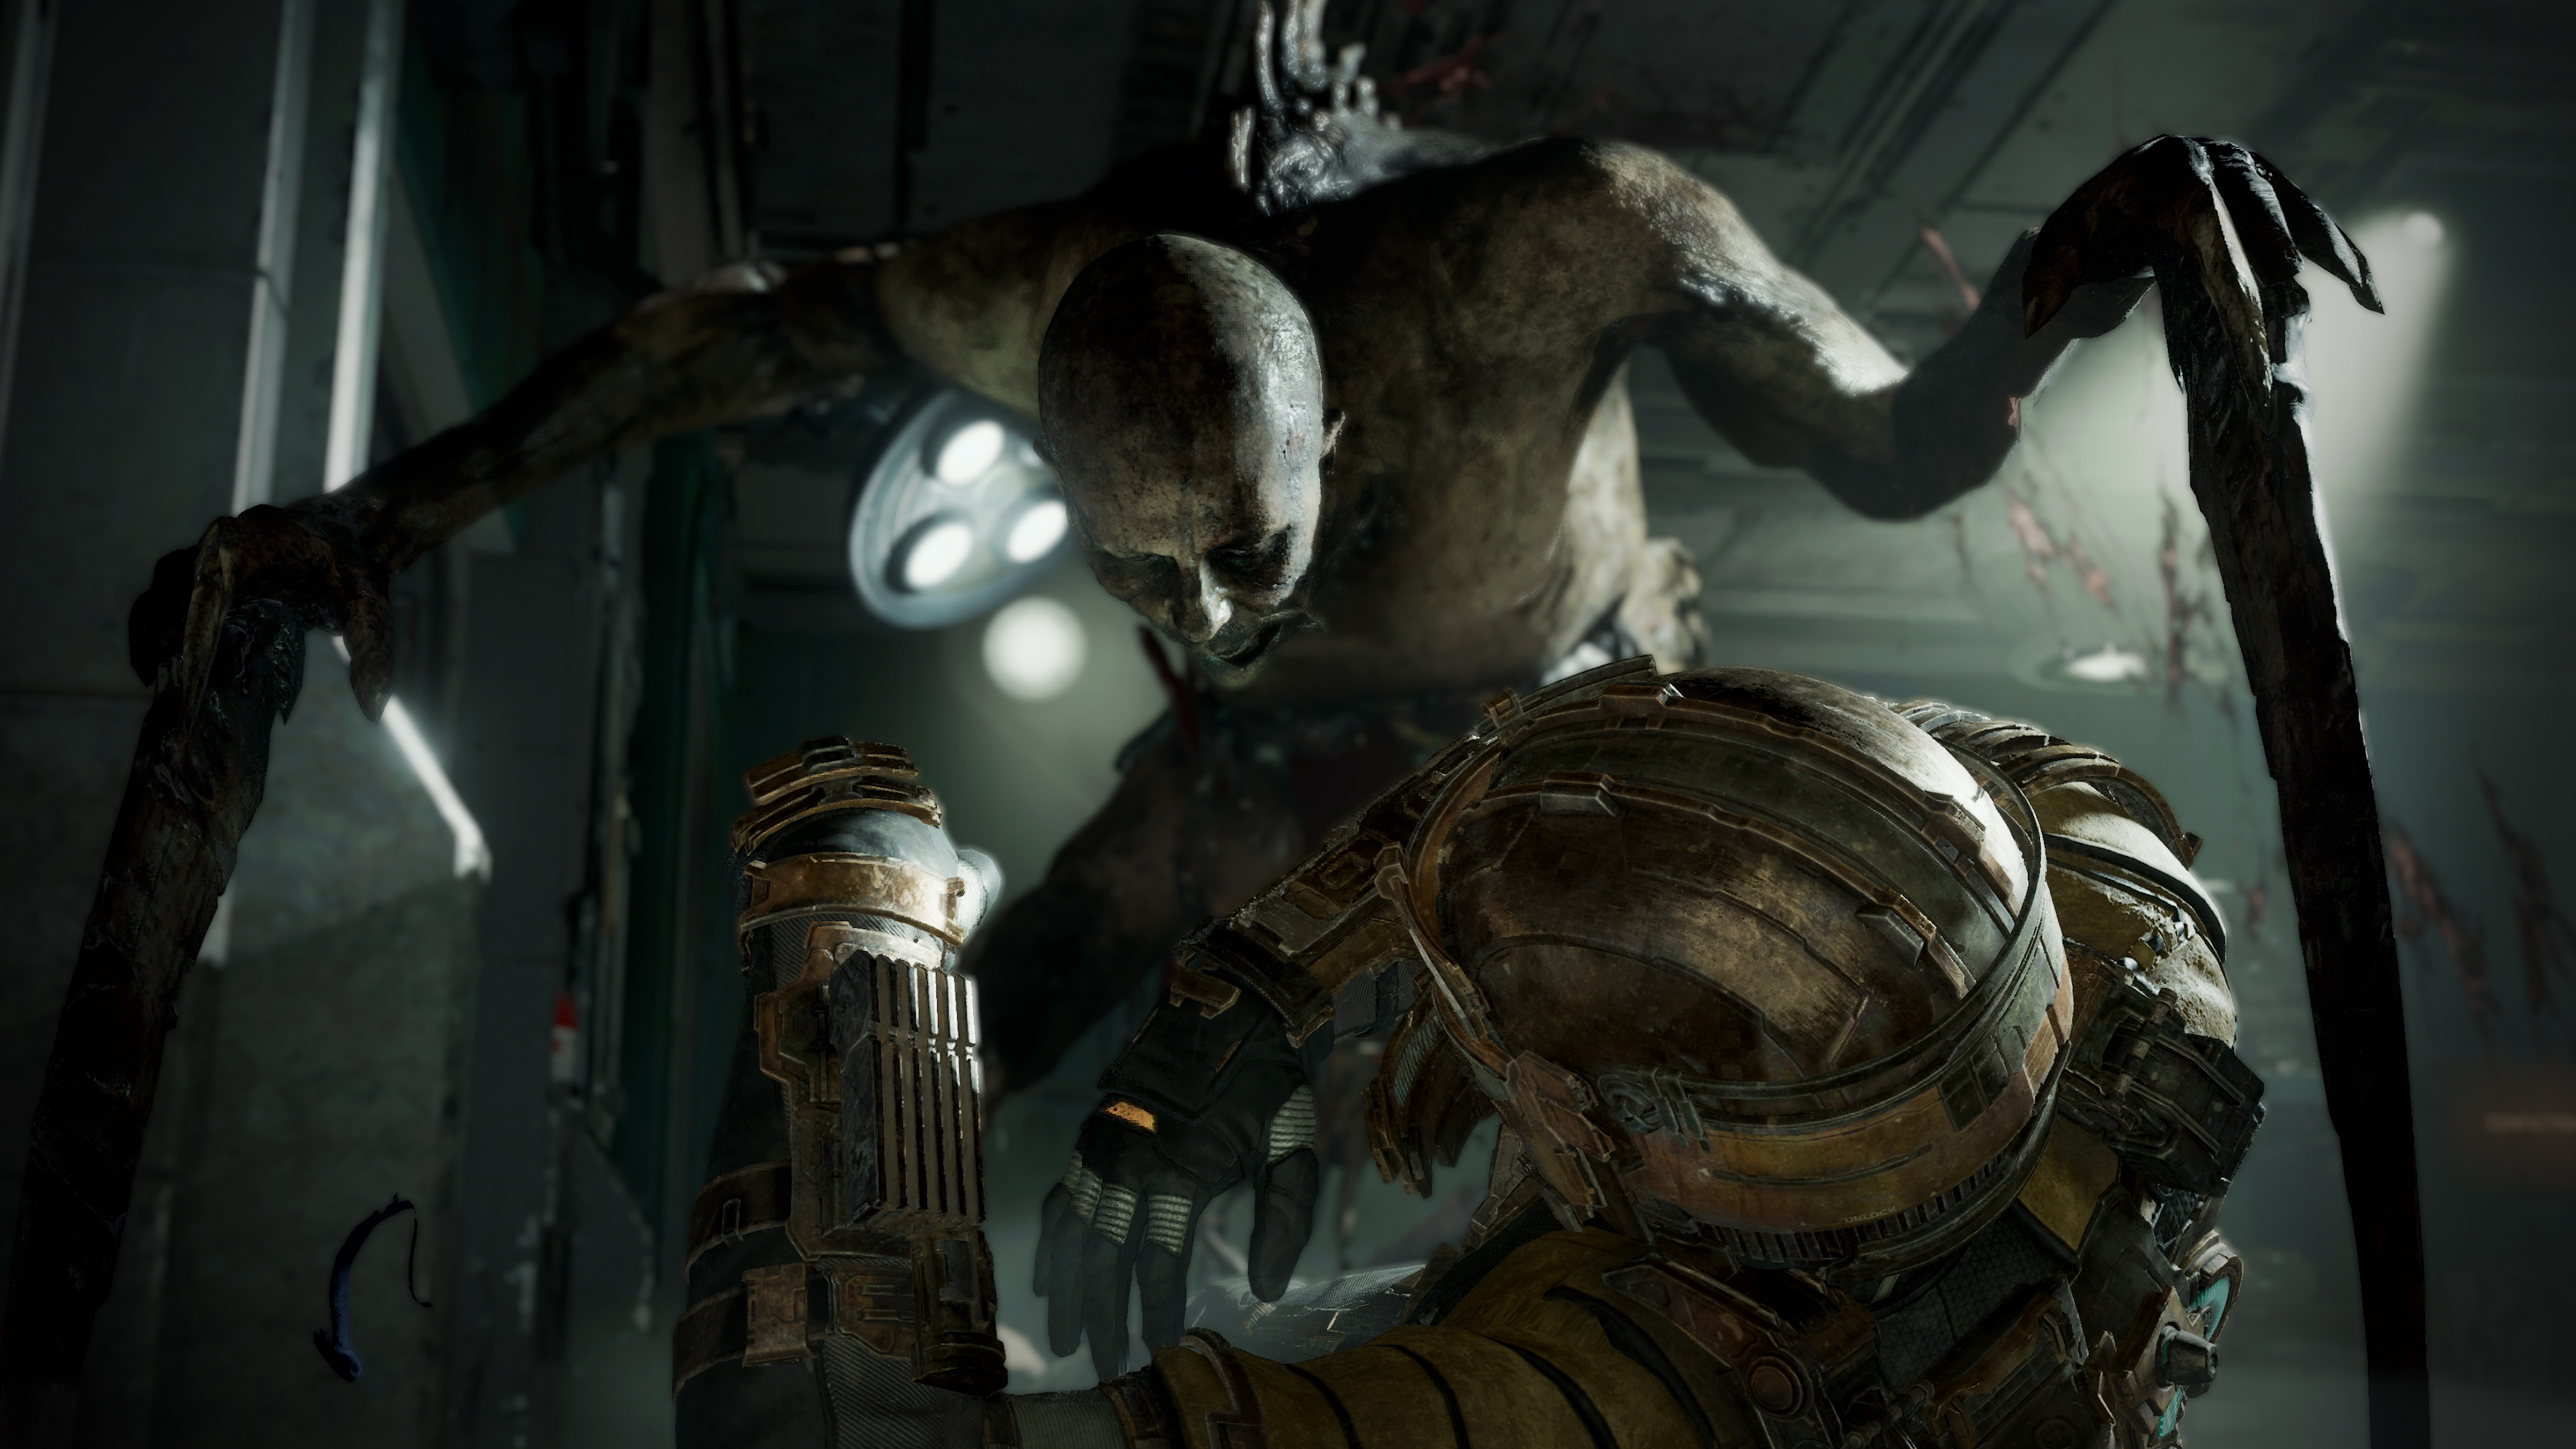 Dead Space remake sắp được phát hành trên Steam và Origin sẽ mang đến cho người chơi những trải nghiệm kinh hoàng nhất về không gian đáng sợ. Hãy cùng đón xem và chuẩn bị tinh thần để đối mặt với những thử thách khắc nghiệt.